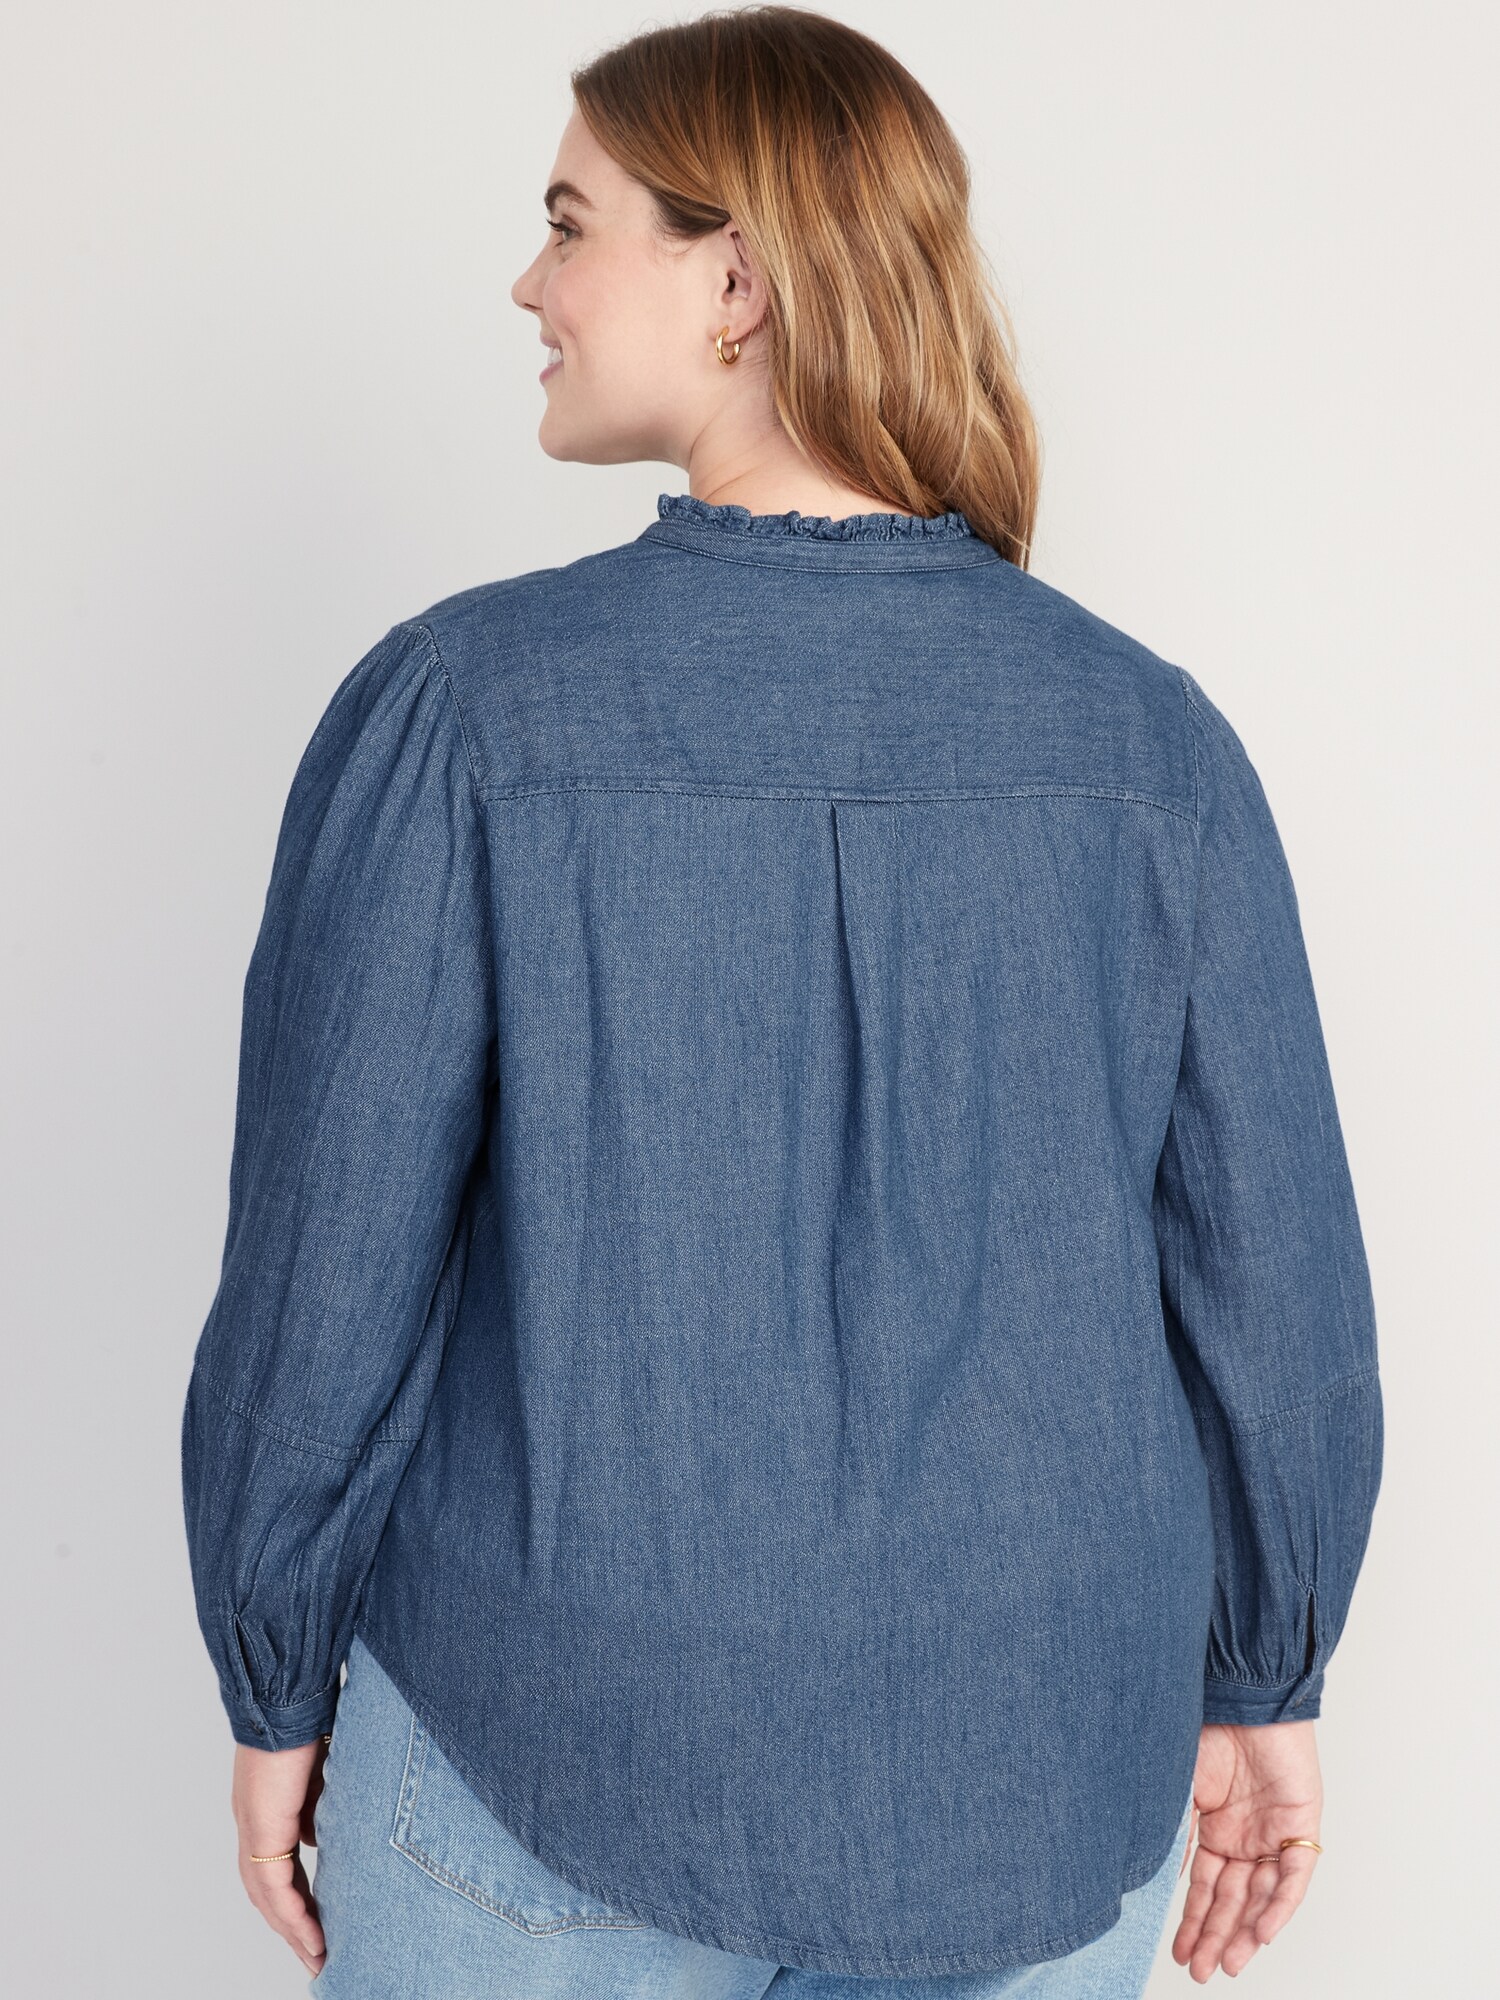 Ruffle-Neck Jean Shirt for Women